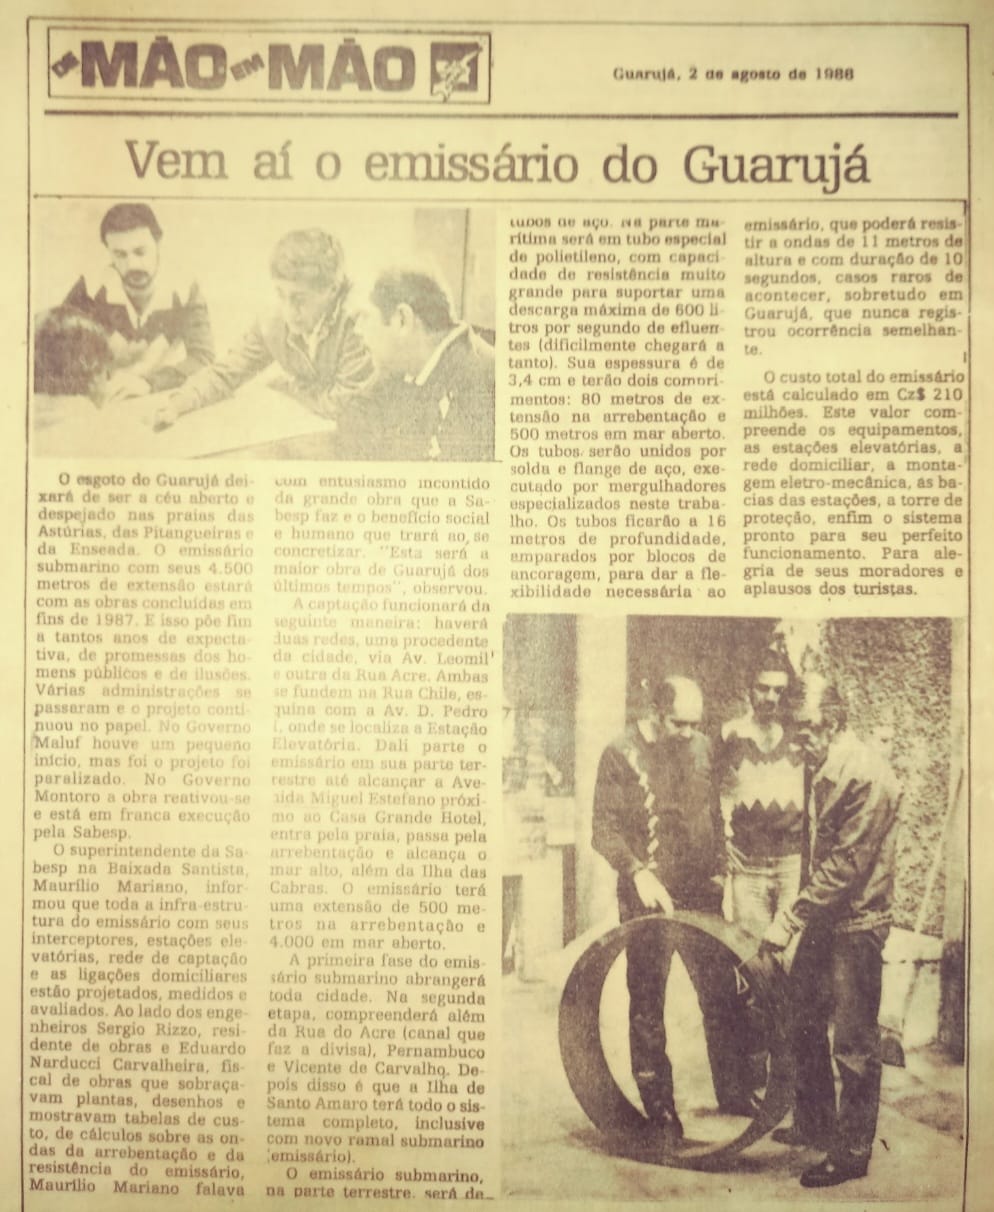 Emissário do Guarujá